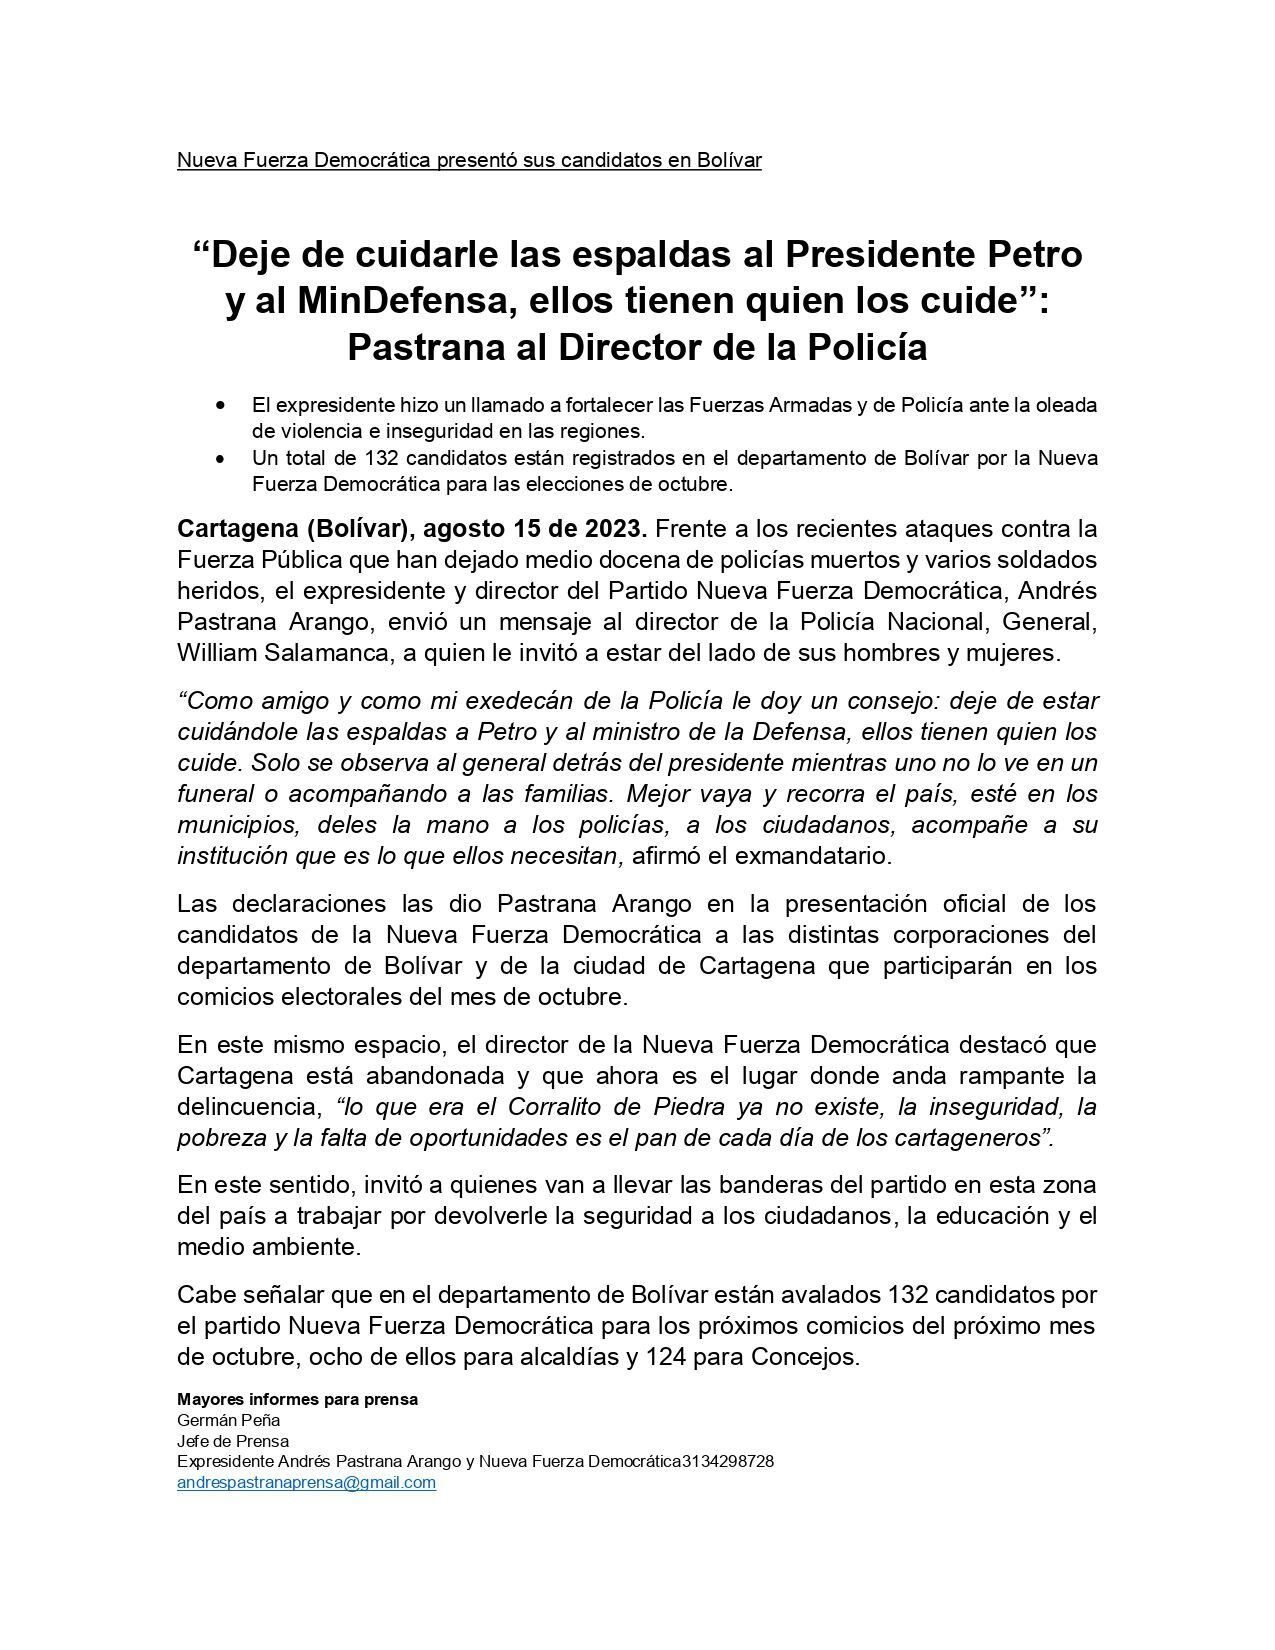 Comunicado del expresidente Andrés Pastrana al director de la Policía Nacional, general William Salamanca